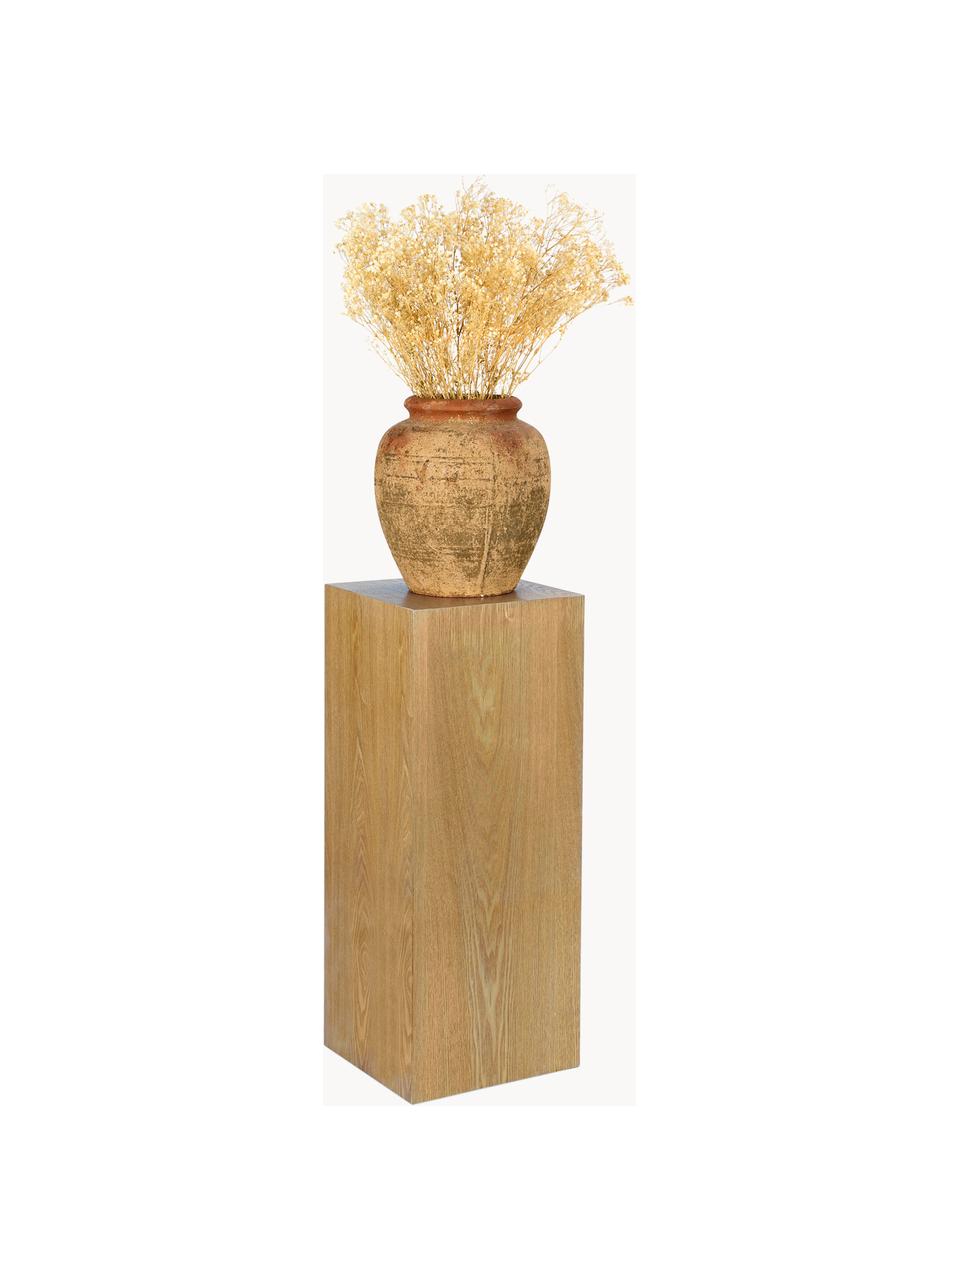 Socle décoratif en bois Pedestal, tailles variées, MDF (panneau en fibres de bois à densité moyenne), placage en frêne, Bois, larg. 28 x haut. 70 cm